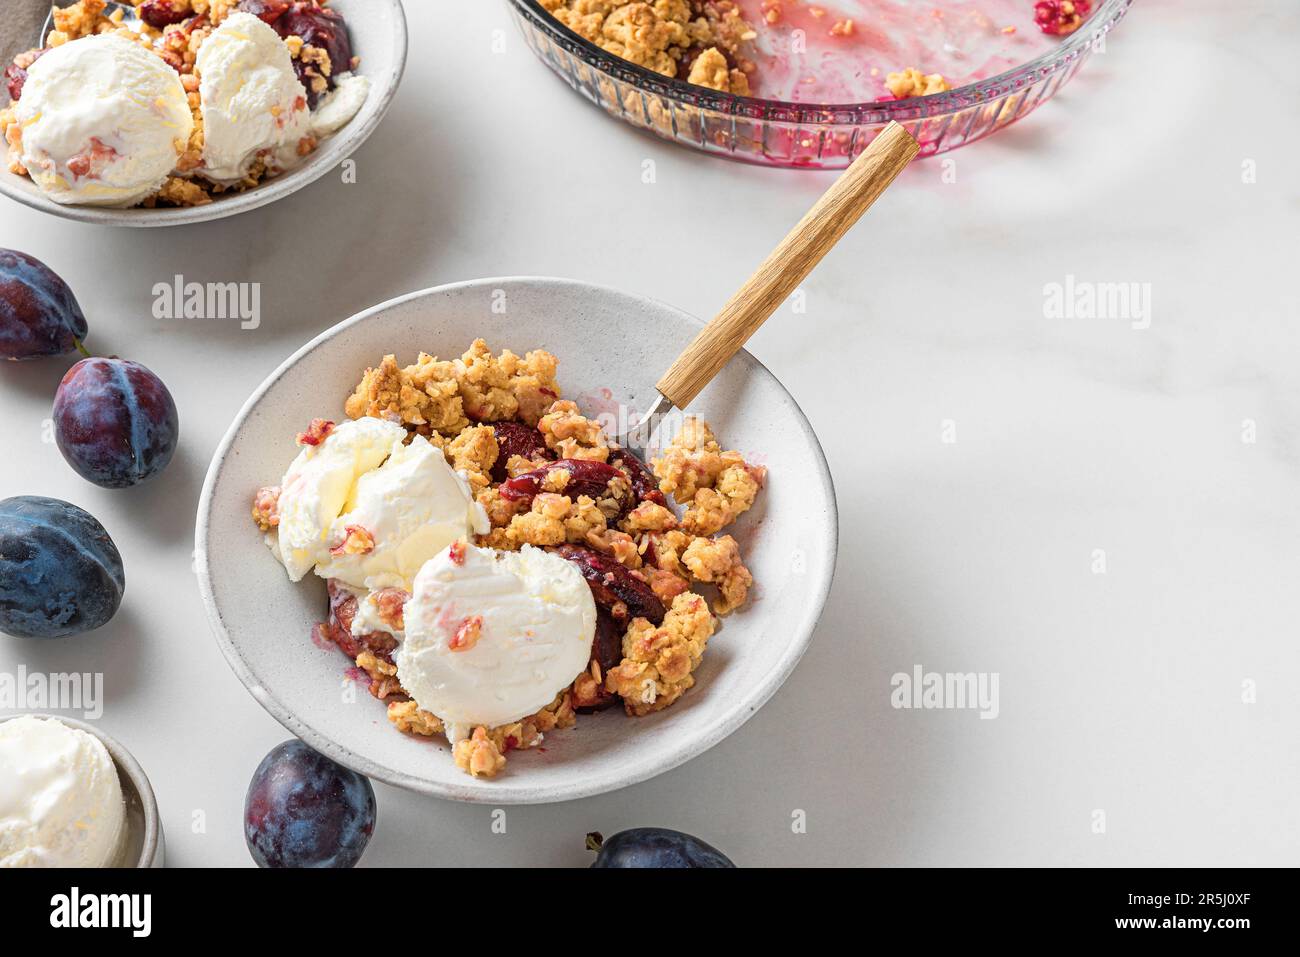 Crumble aux fruits. Tarte aux prunes avec glace à la vanille dans des assiettes avec des cuillères sur une table en marbre blanc Banque D'Images